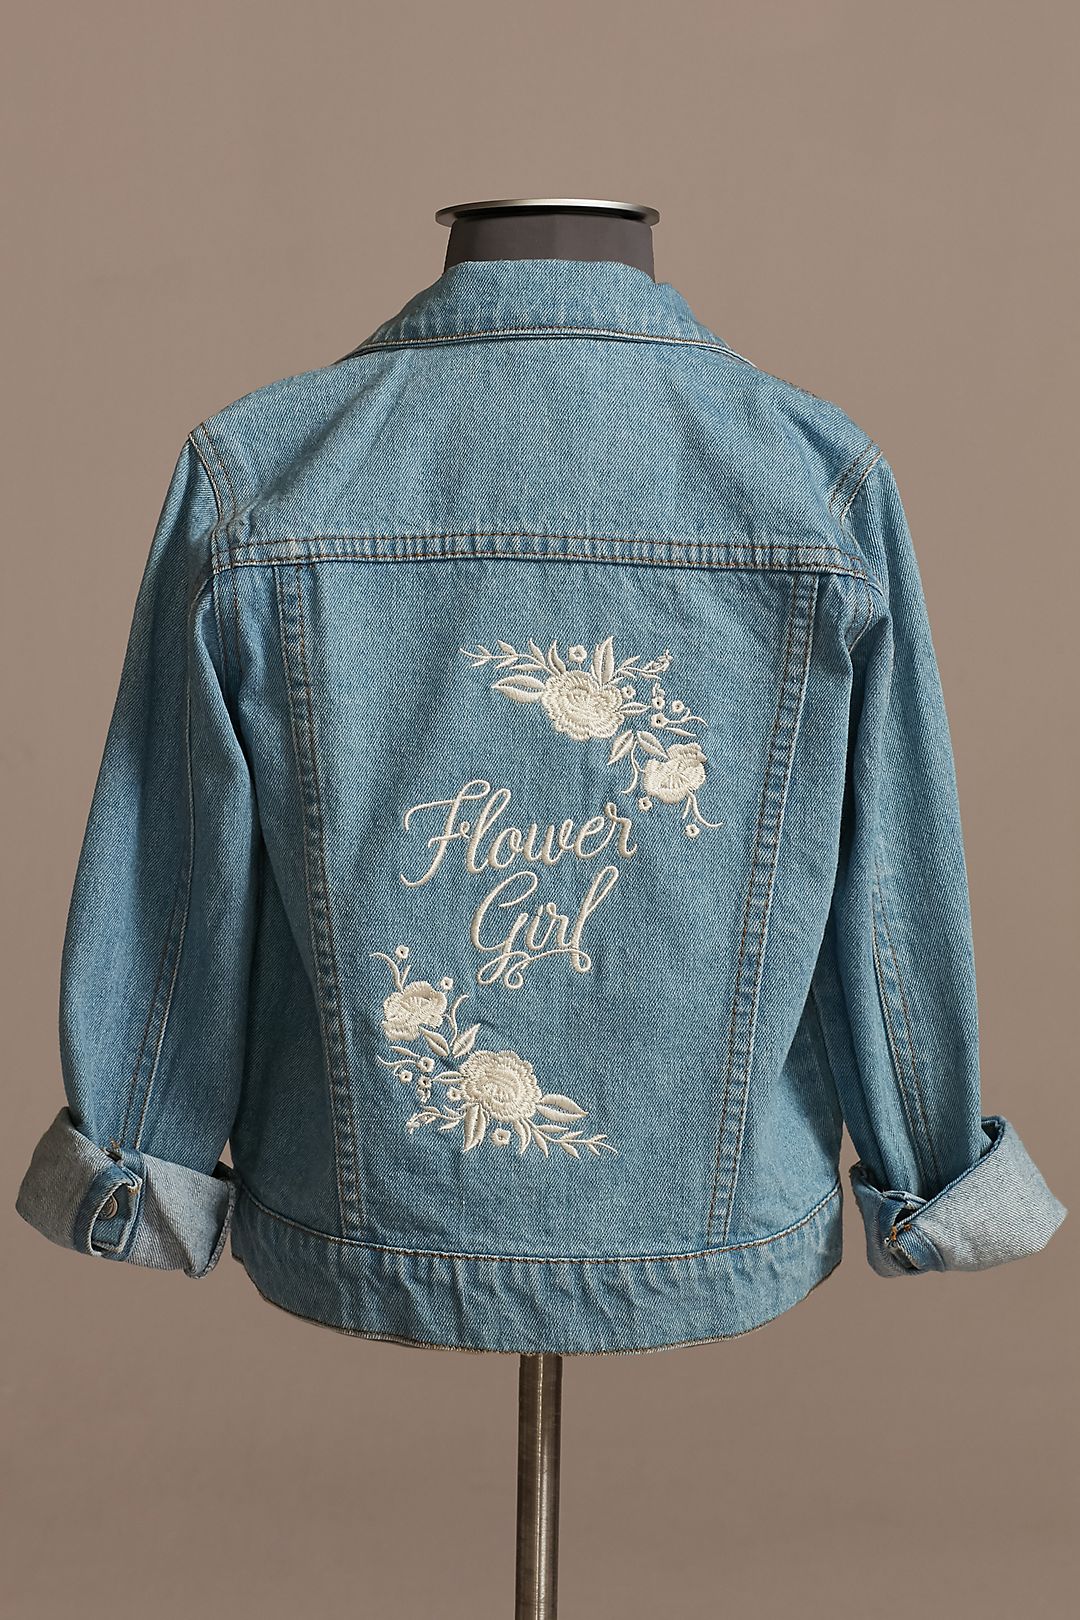 Cottage Rose Jean Jacket Classic Blue, Floral,/Denim, Floral, Women's Size XL | April Cornell